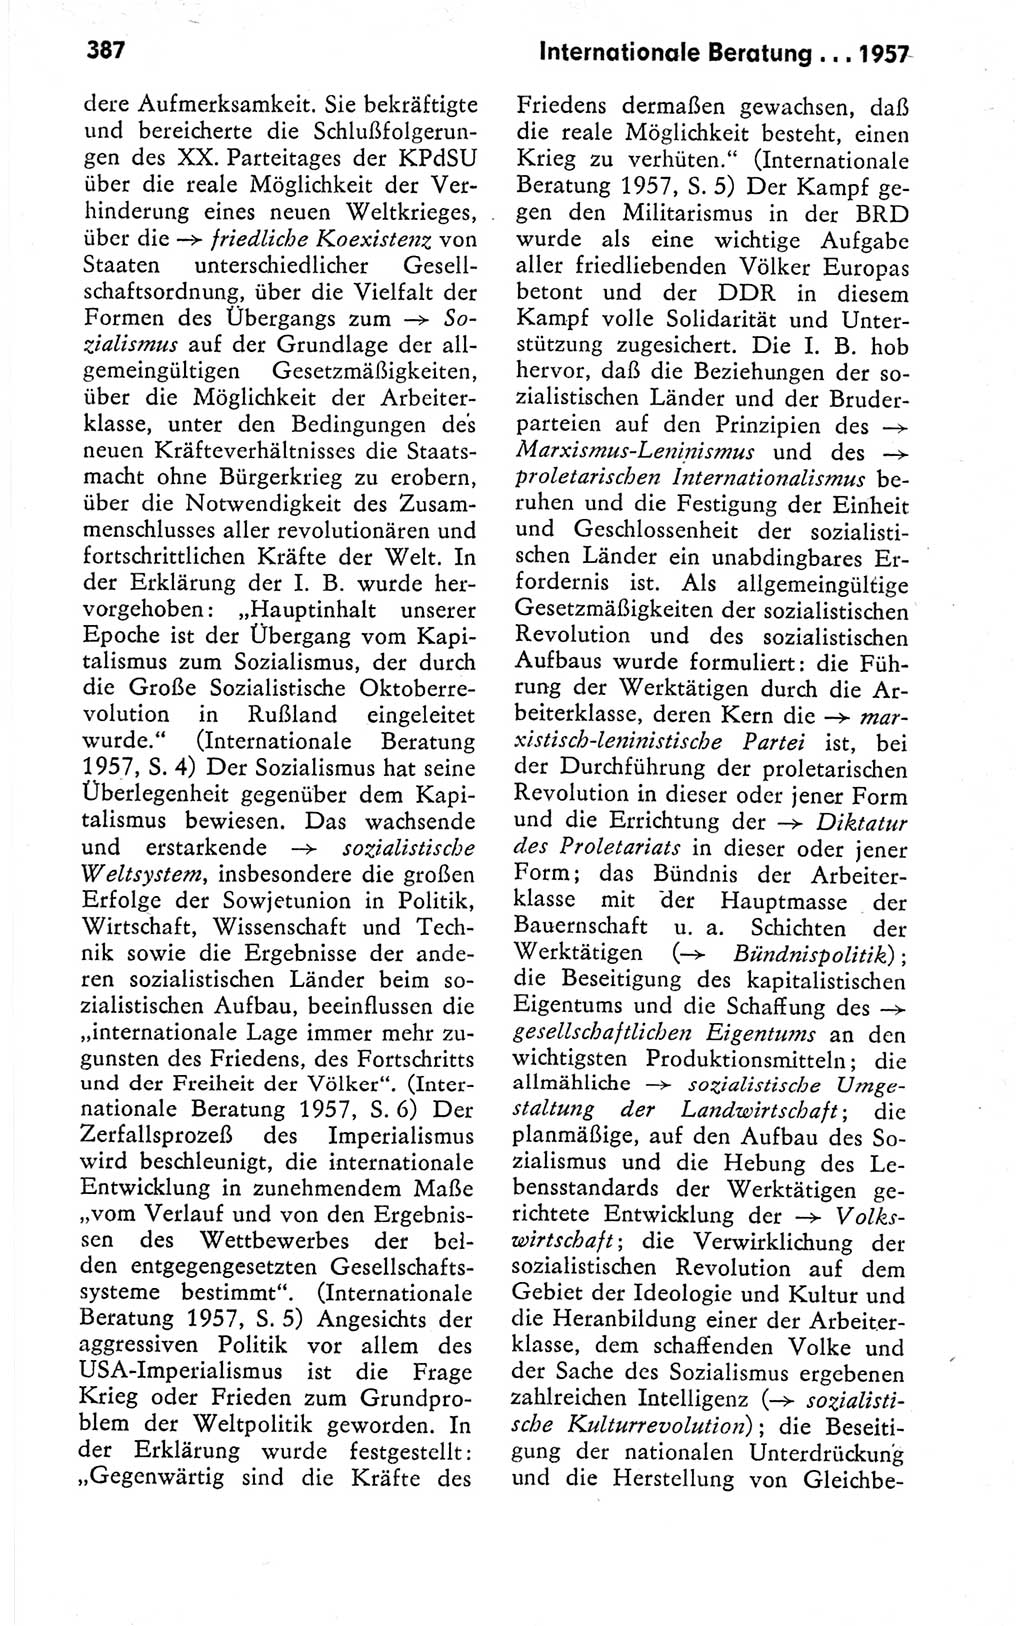 Kleines politisches Wörterbuch [Deutsche Demokratische Republik (DDR)] 1978, Seite 387 (Kl. pol. Wb. DDR 1978, S. 387)